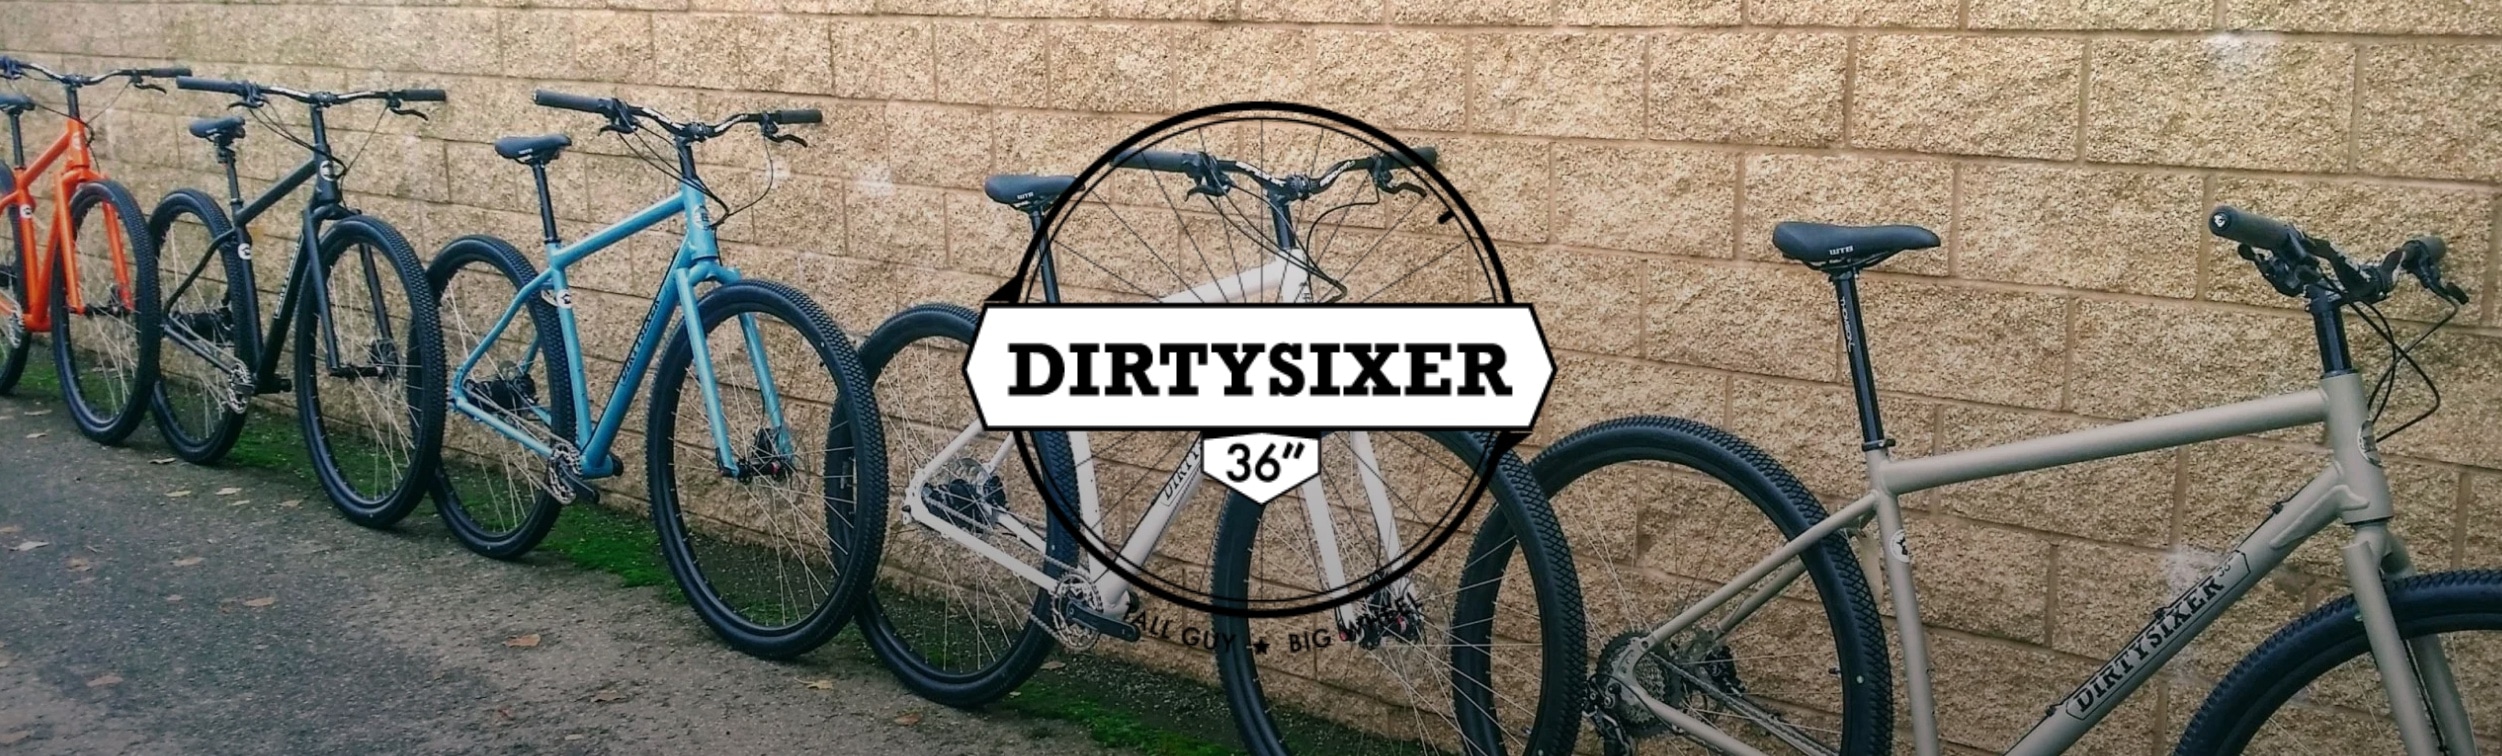 DIrtySixer plus grands vélo du monde